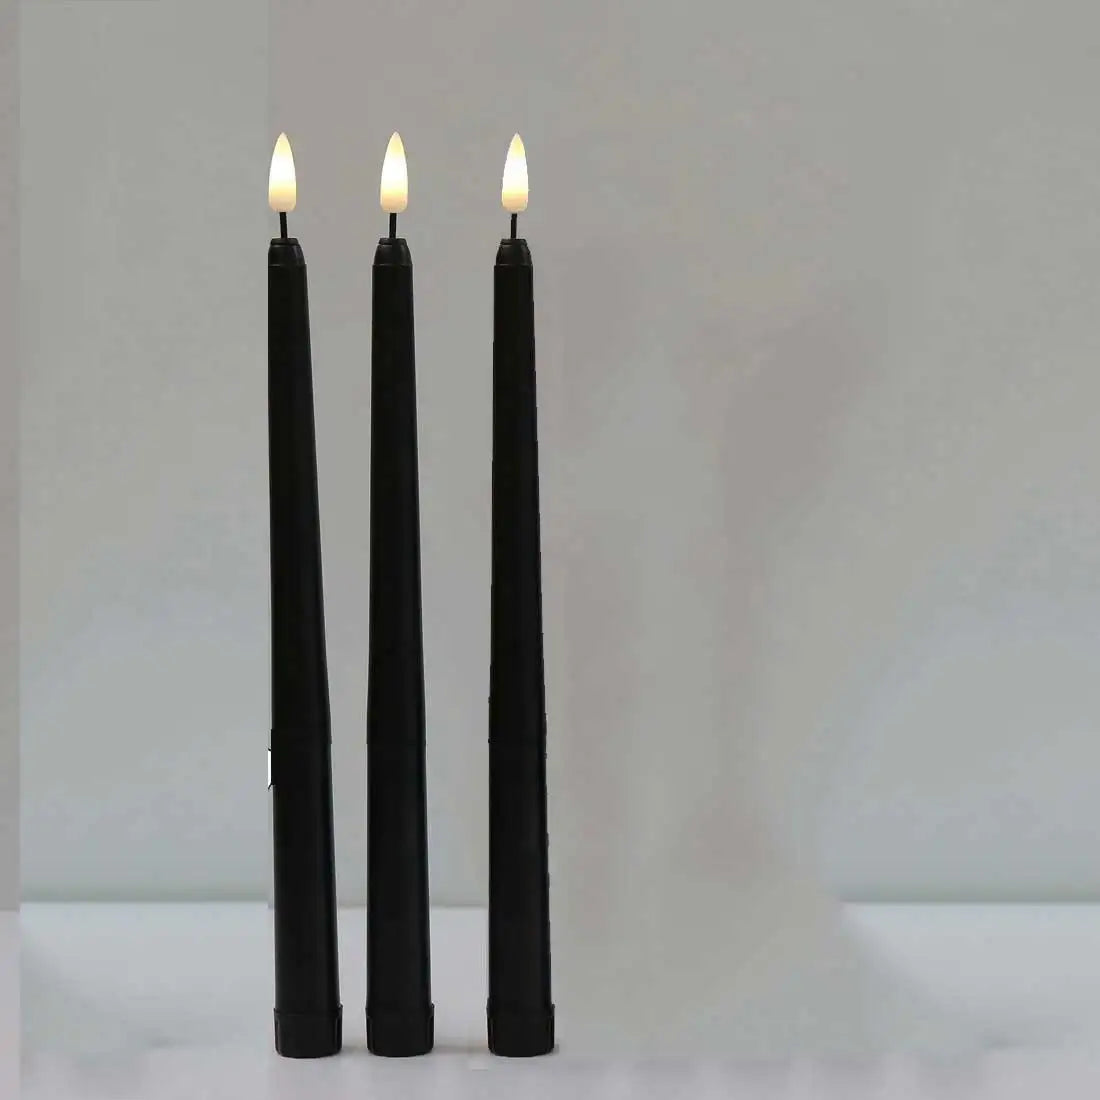 3 alebo 4 kusy 11 palcov Halloween Black bez plameňa LED zúžené sviečky so žltým/teplým bielym svetlom, plastové falošné sviečky LED batérie